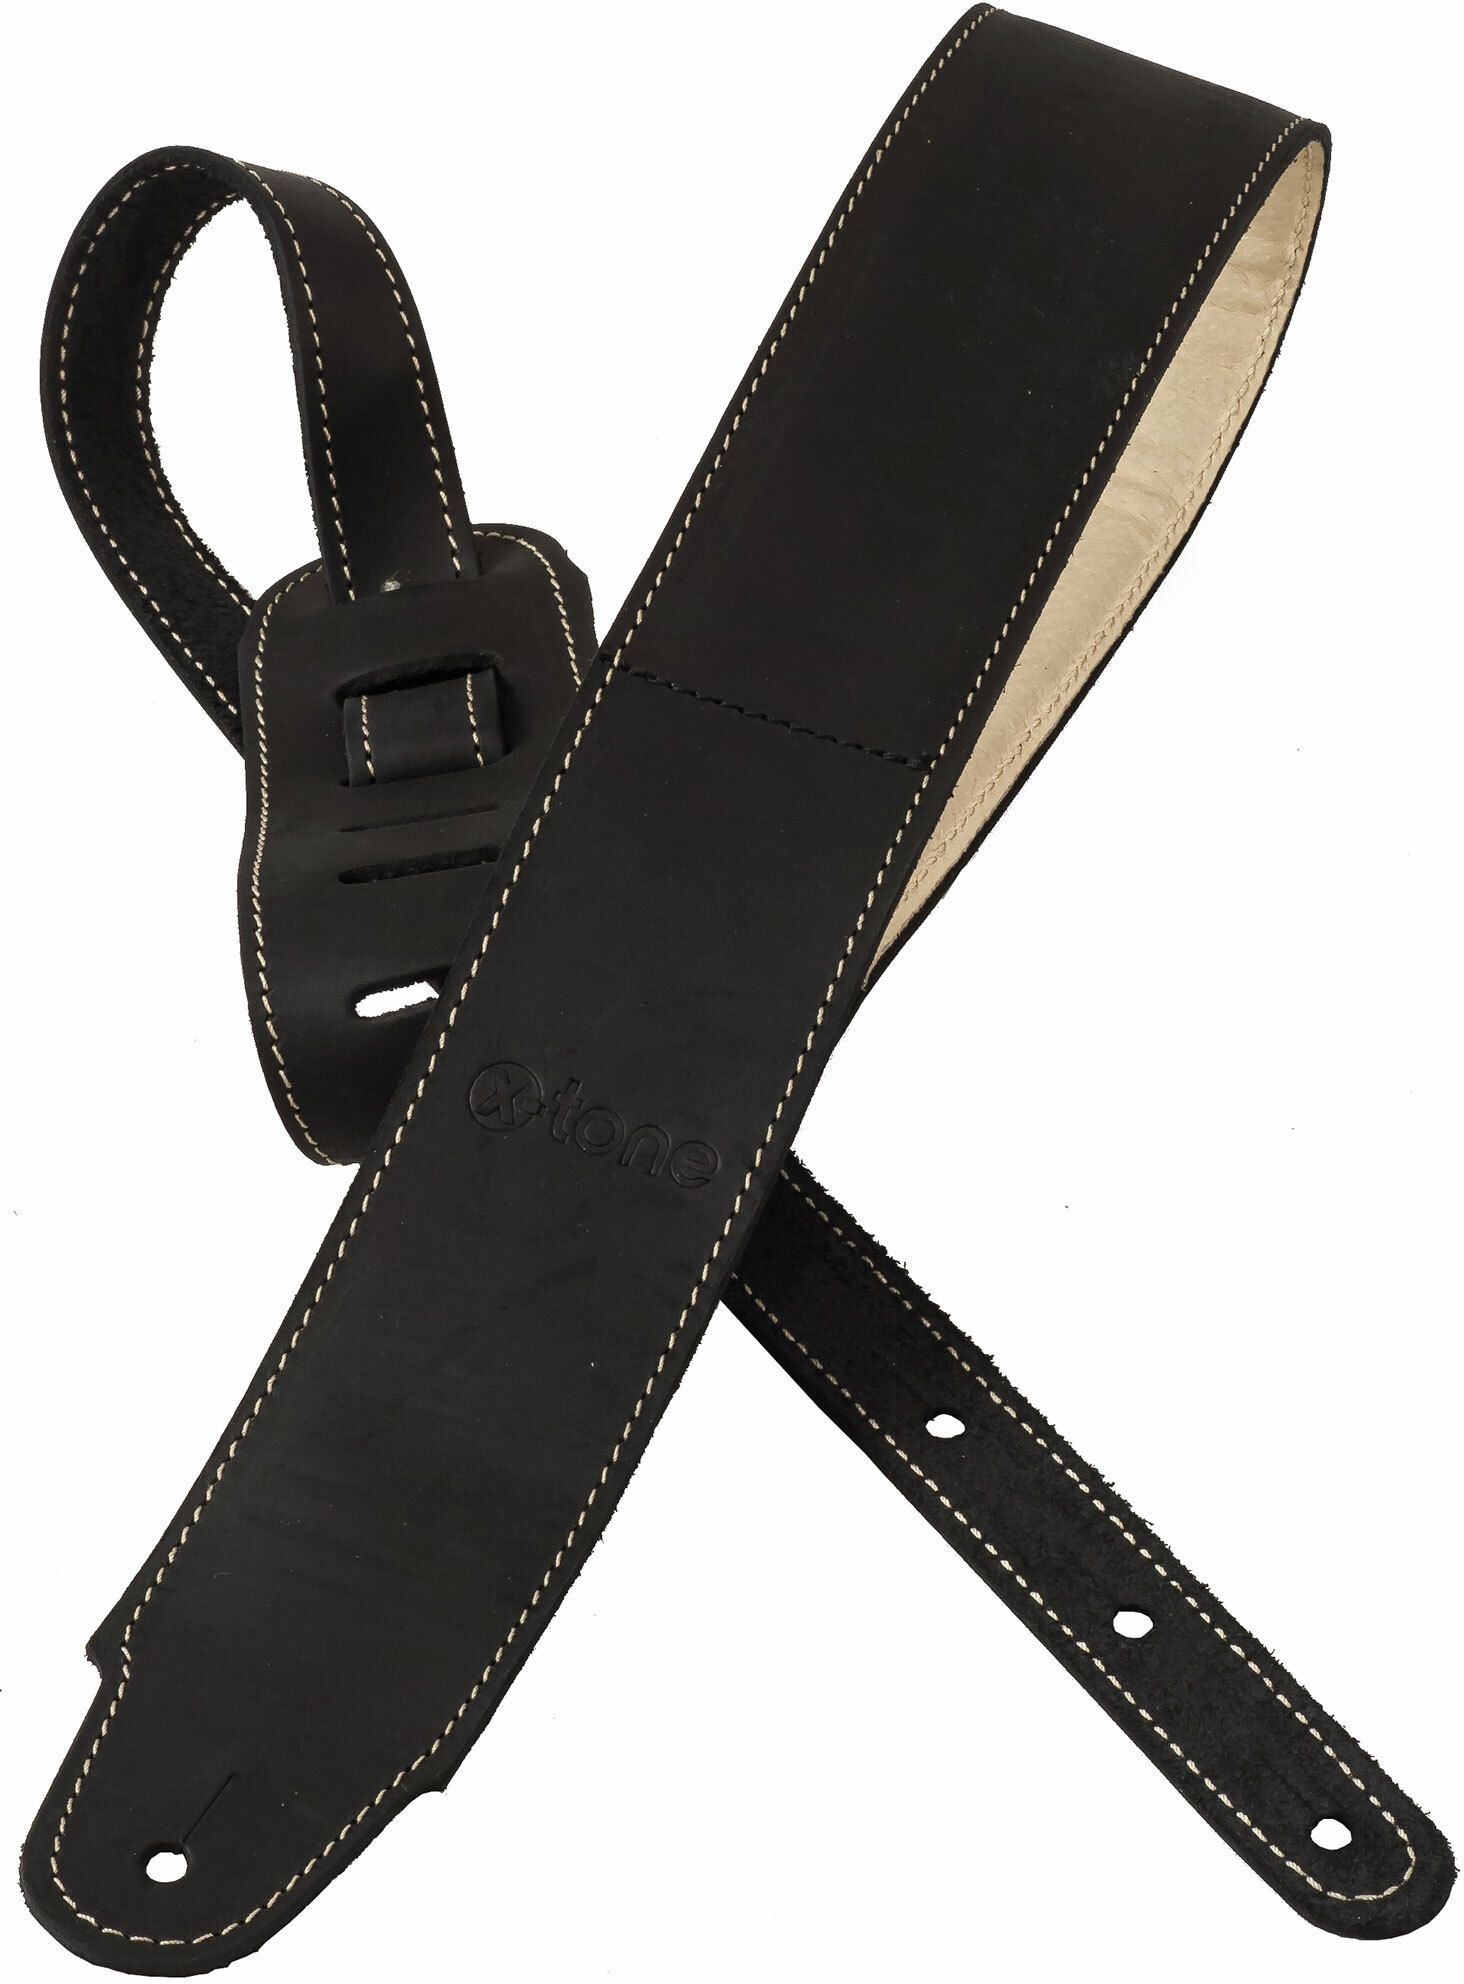 X-tone Xg 3157 Classic Plus Leather Guitar Strap Cuir RembourrÉe Black - Guitar strap - Main picture